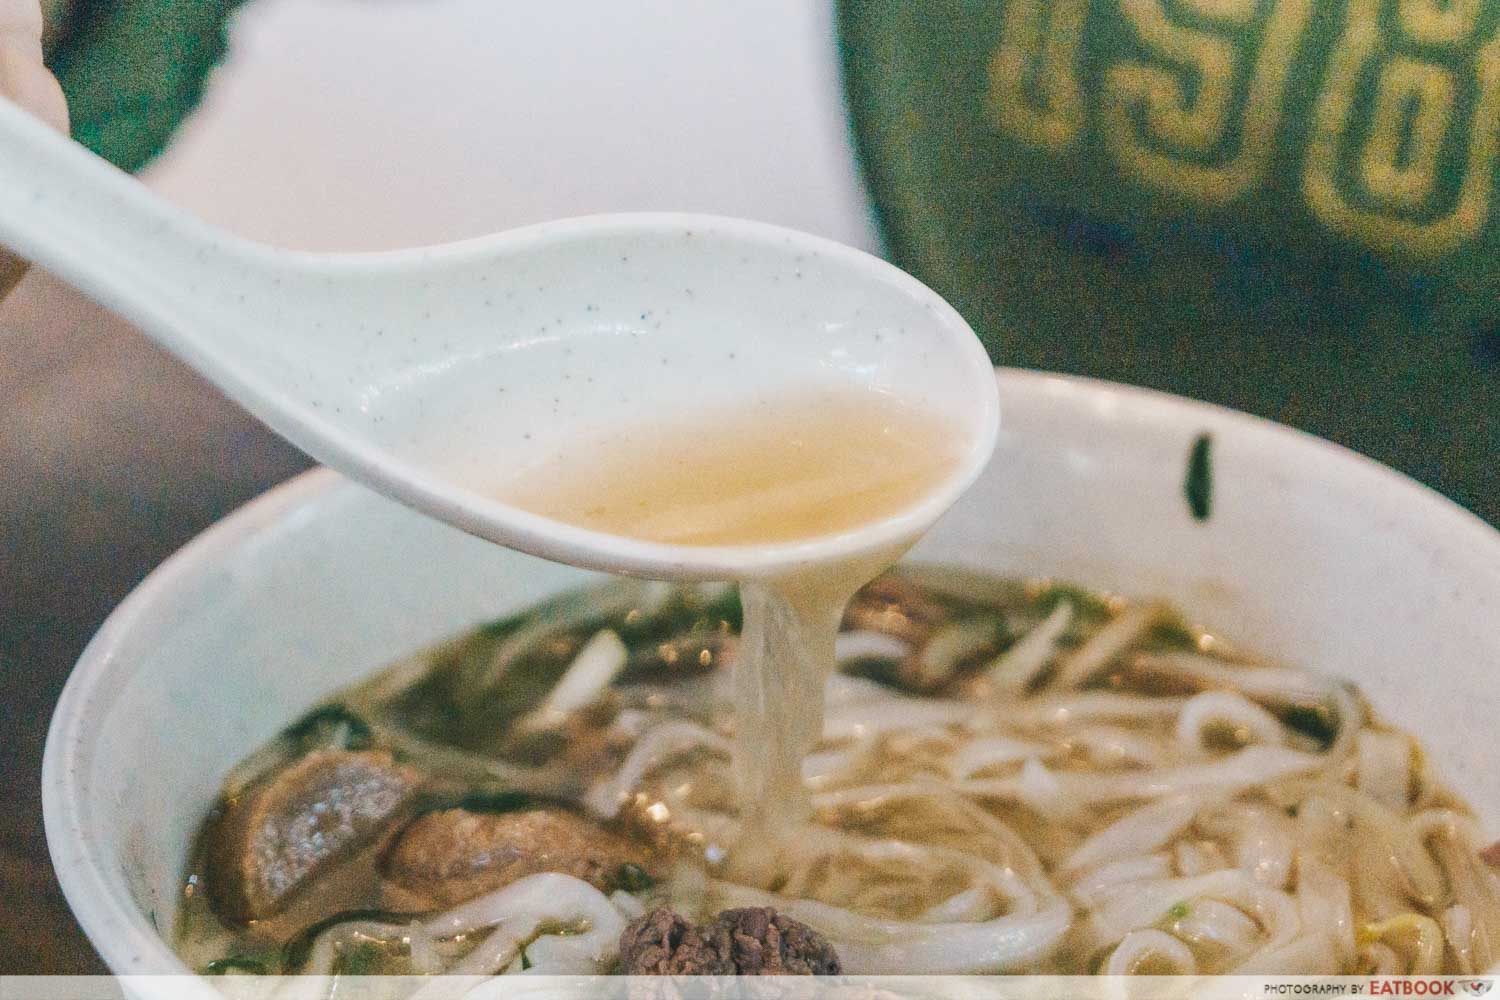 Pho Bo Vietnamese Restaurant - Pho Bo soup